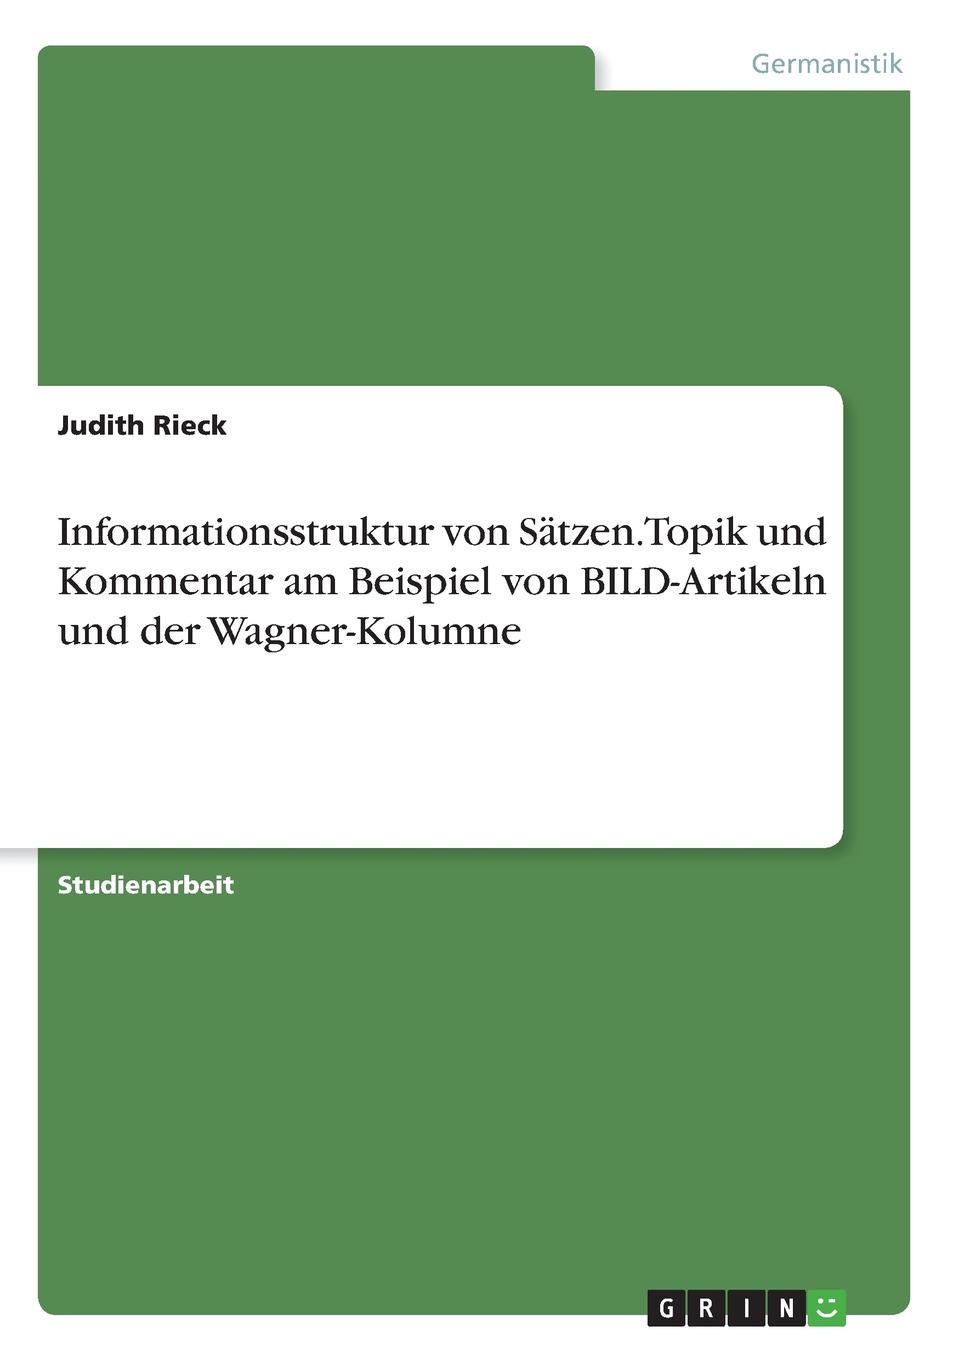 Informationsstruktur von Satzen. Topik und Kommentar am Beispiel von BILD-Artikeln und der Wagner-Kolumne